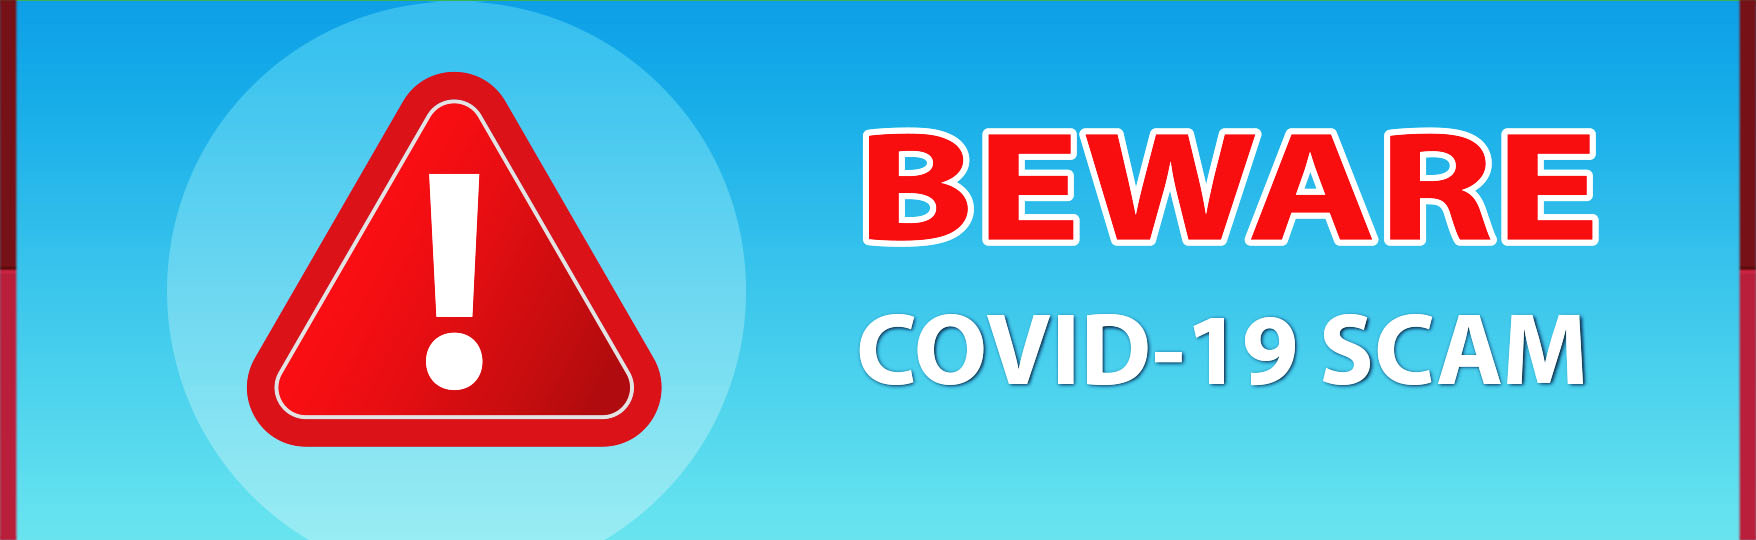 BEWARE: COVID-19 SCAM